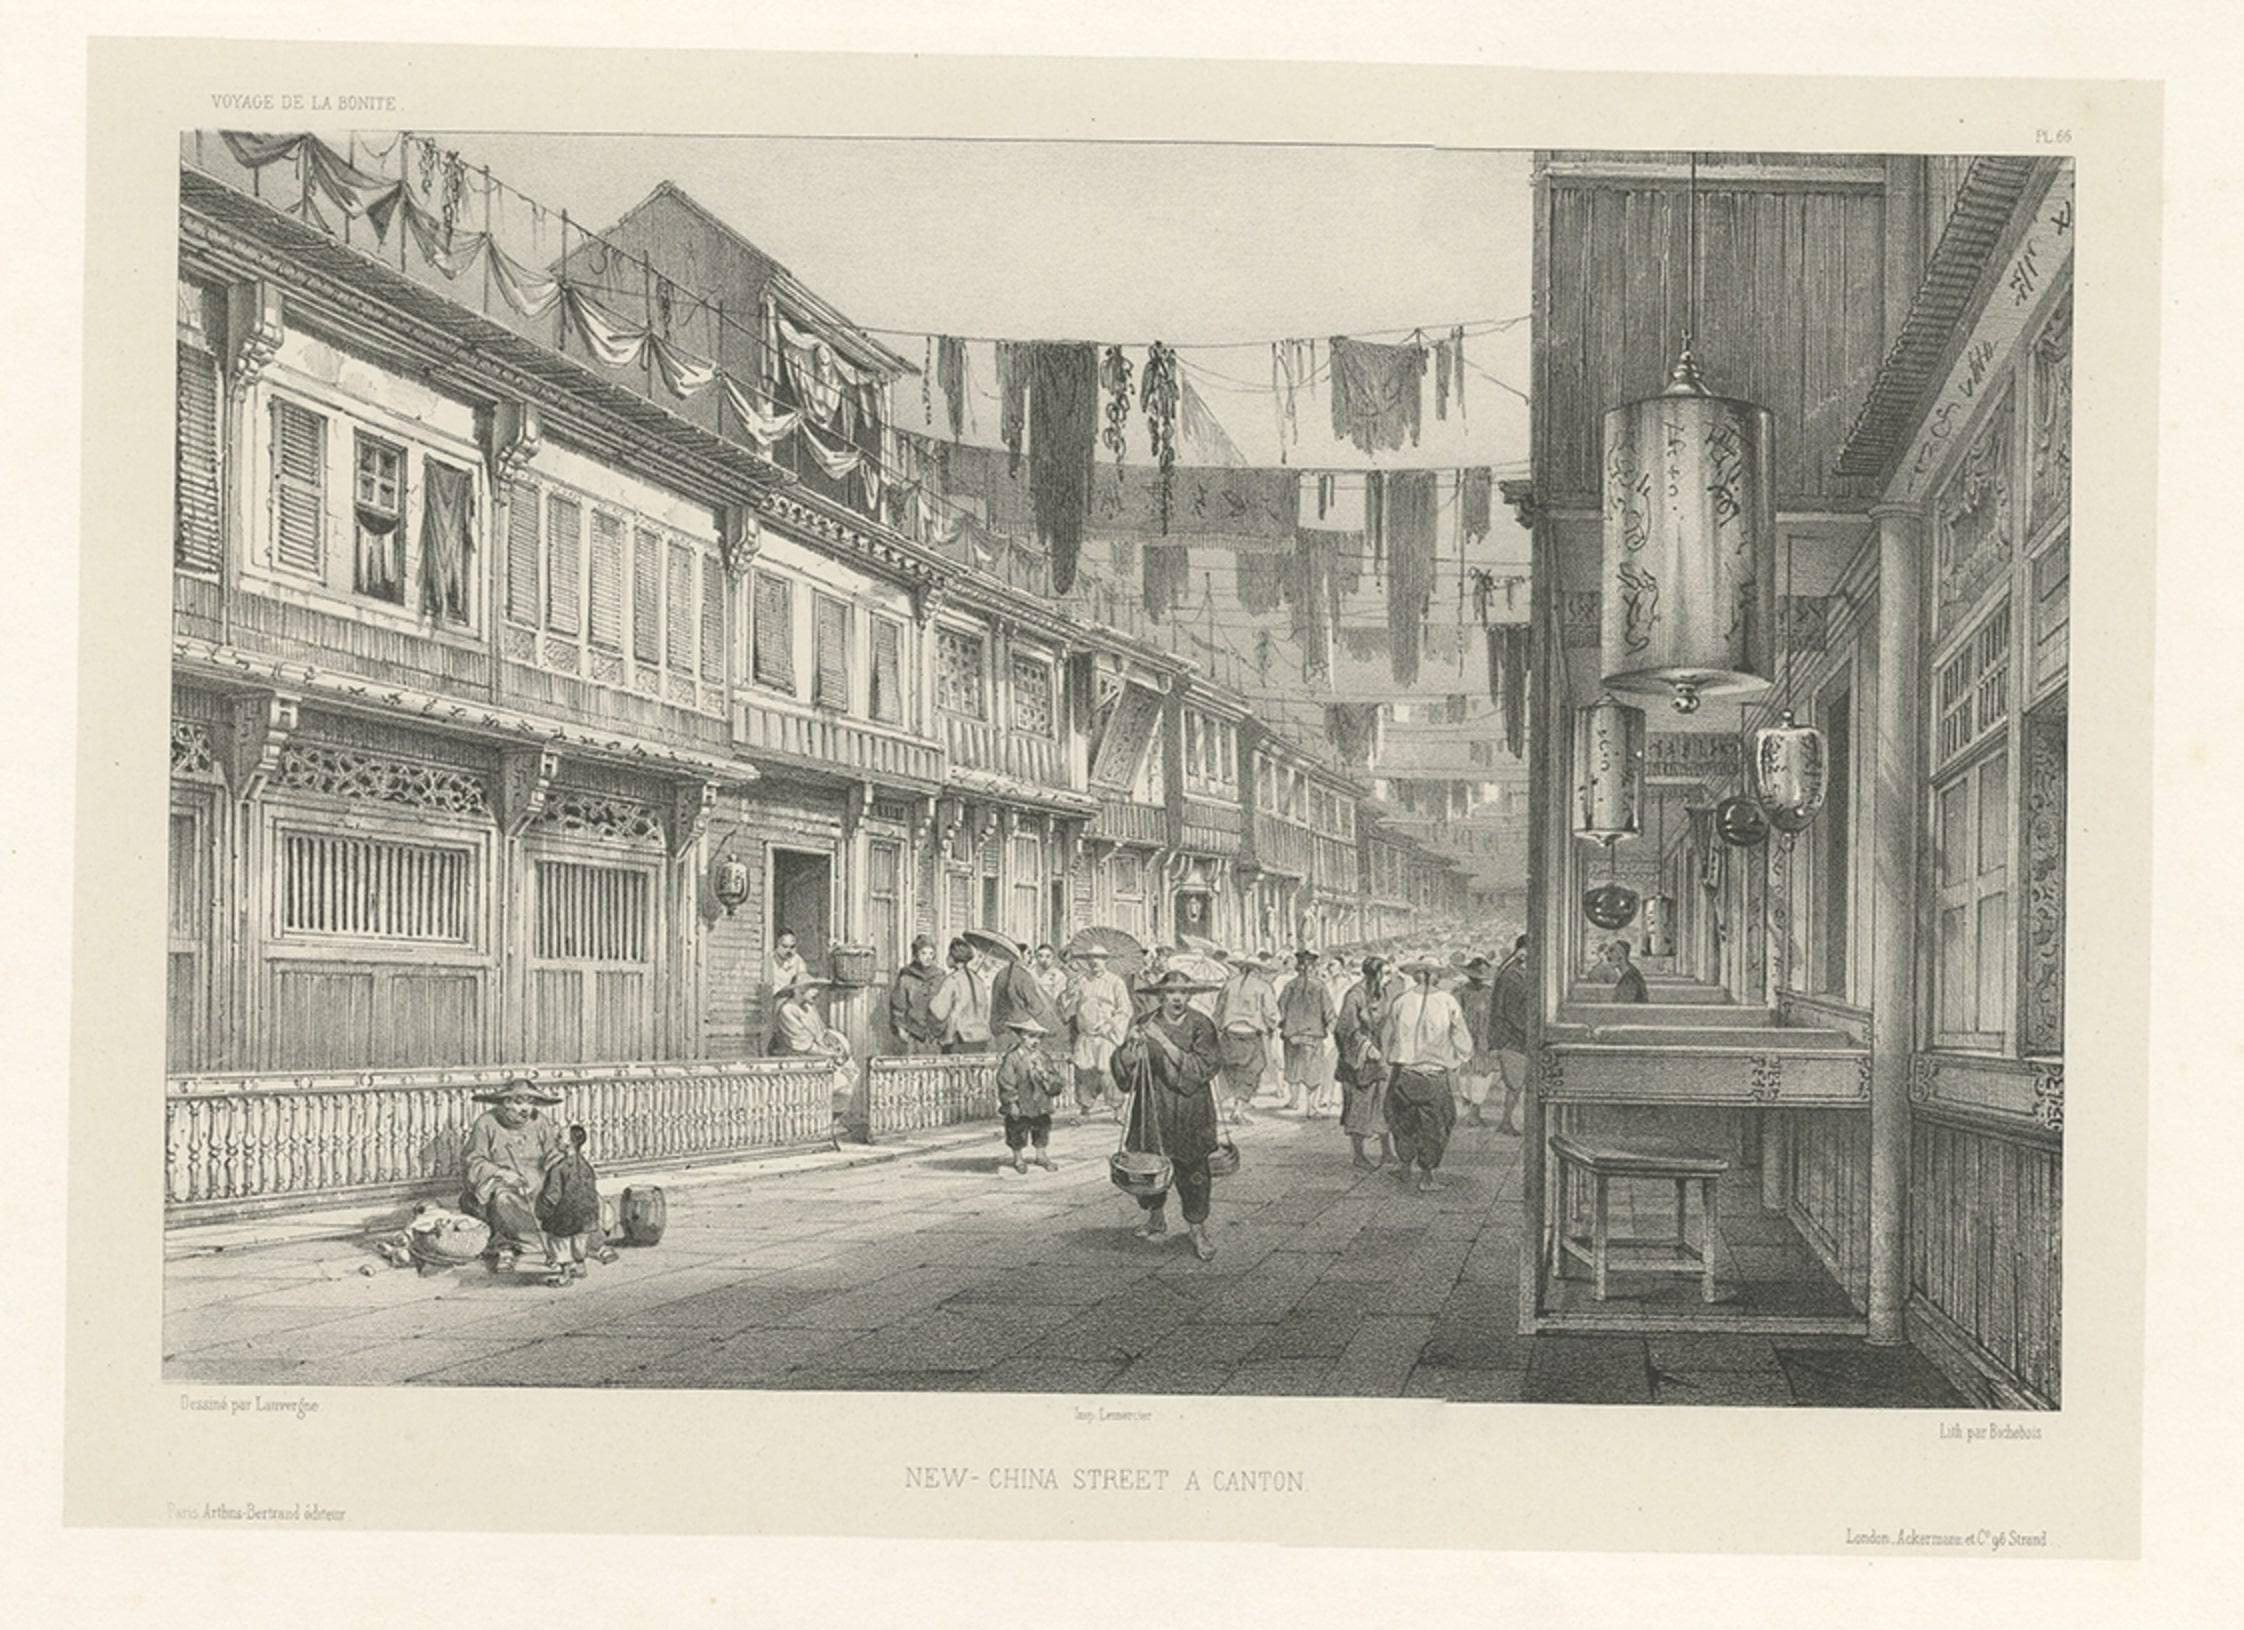 Antique print titled 'New-China Street a Canton'. 

This print depicts a street in Guangzhou, China. Originates from 'Voyage autour du monde, exécuté pendant les années 1836 et 1837 sur la corvette La Bonite (..)' by A.N. Vaillant. 

The main aim of